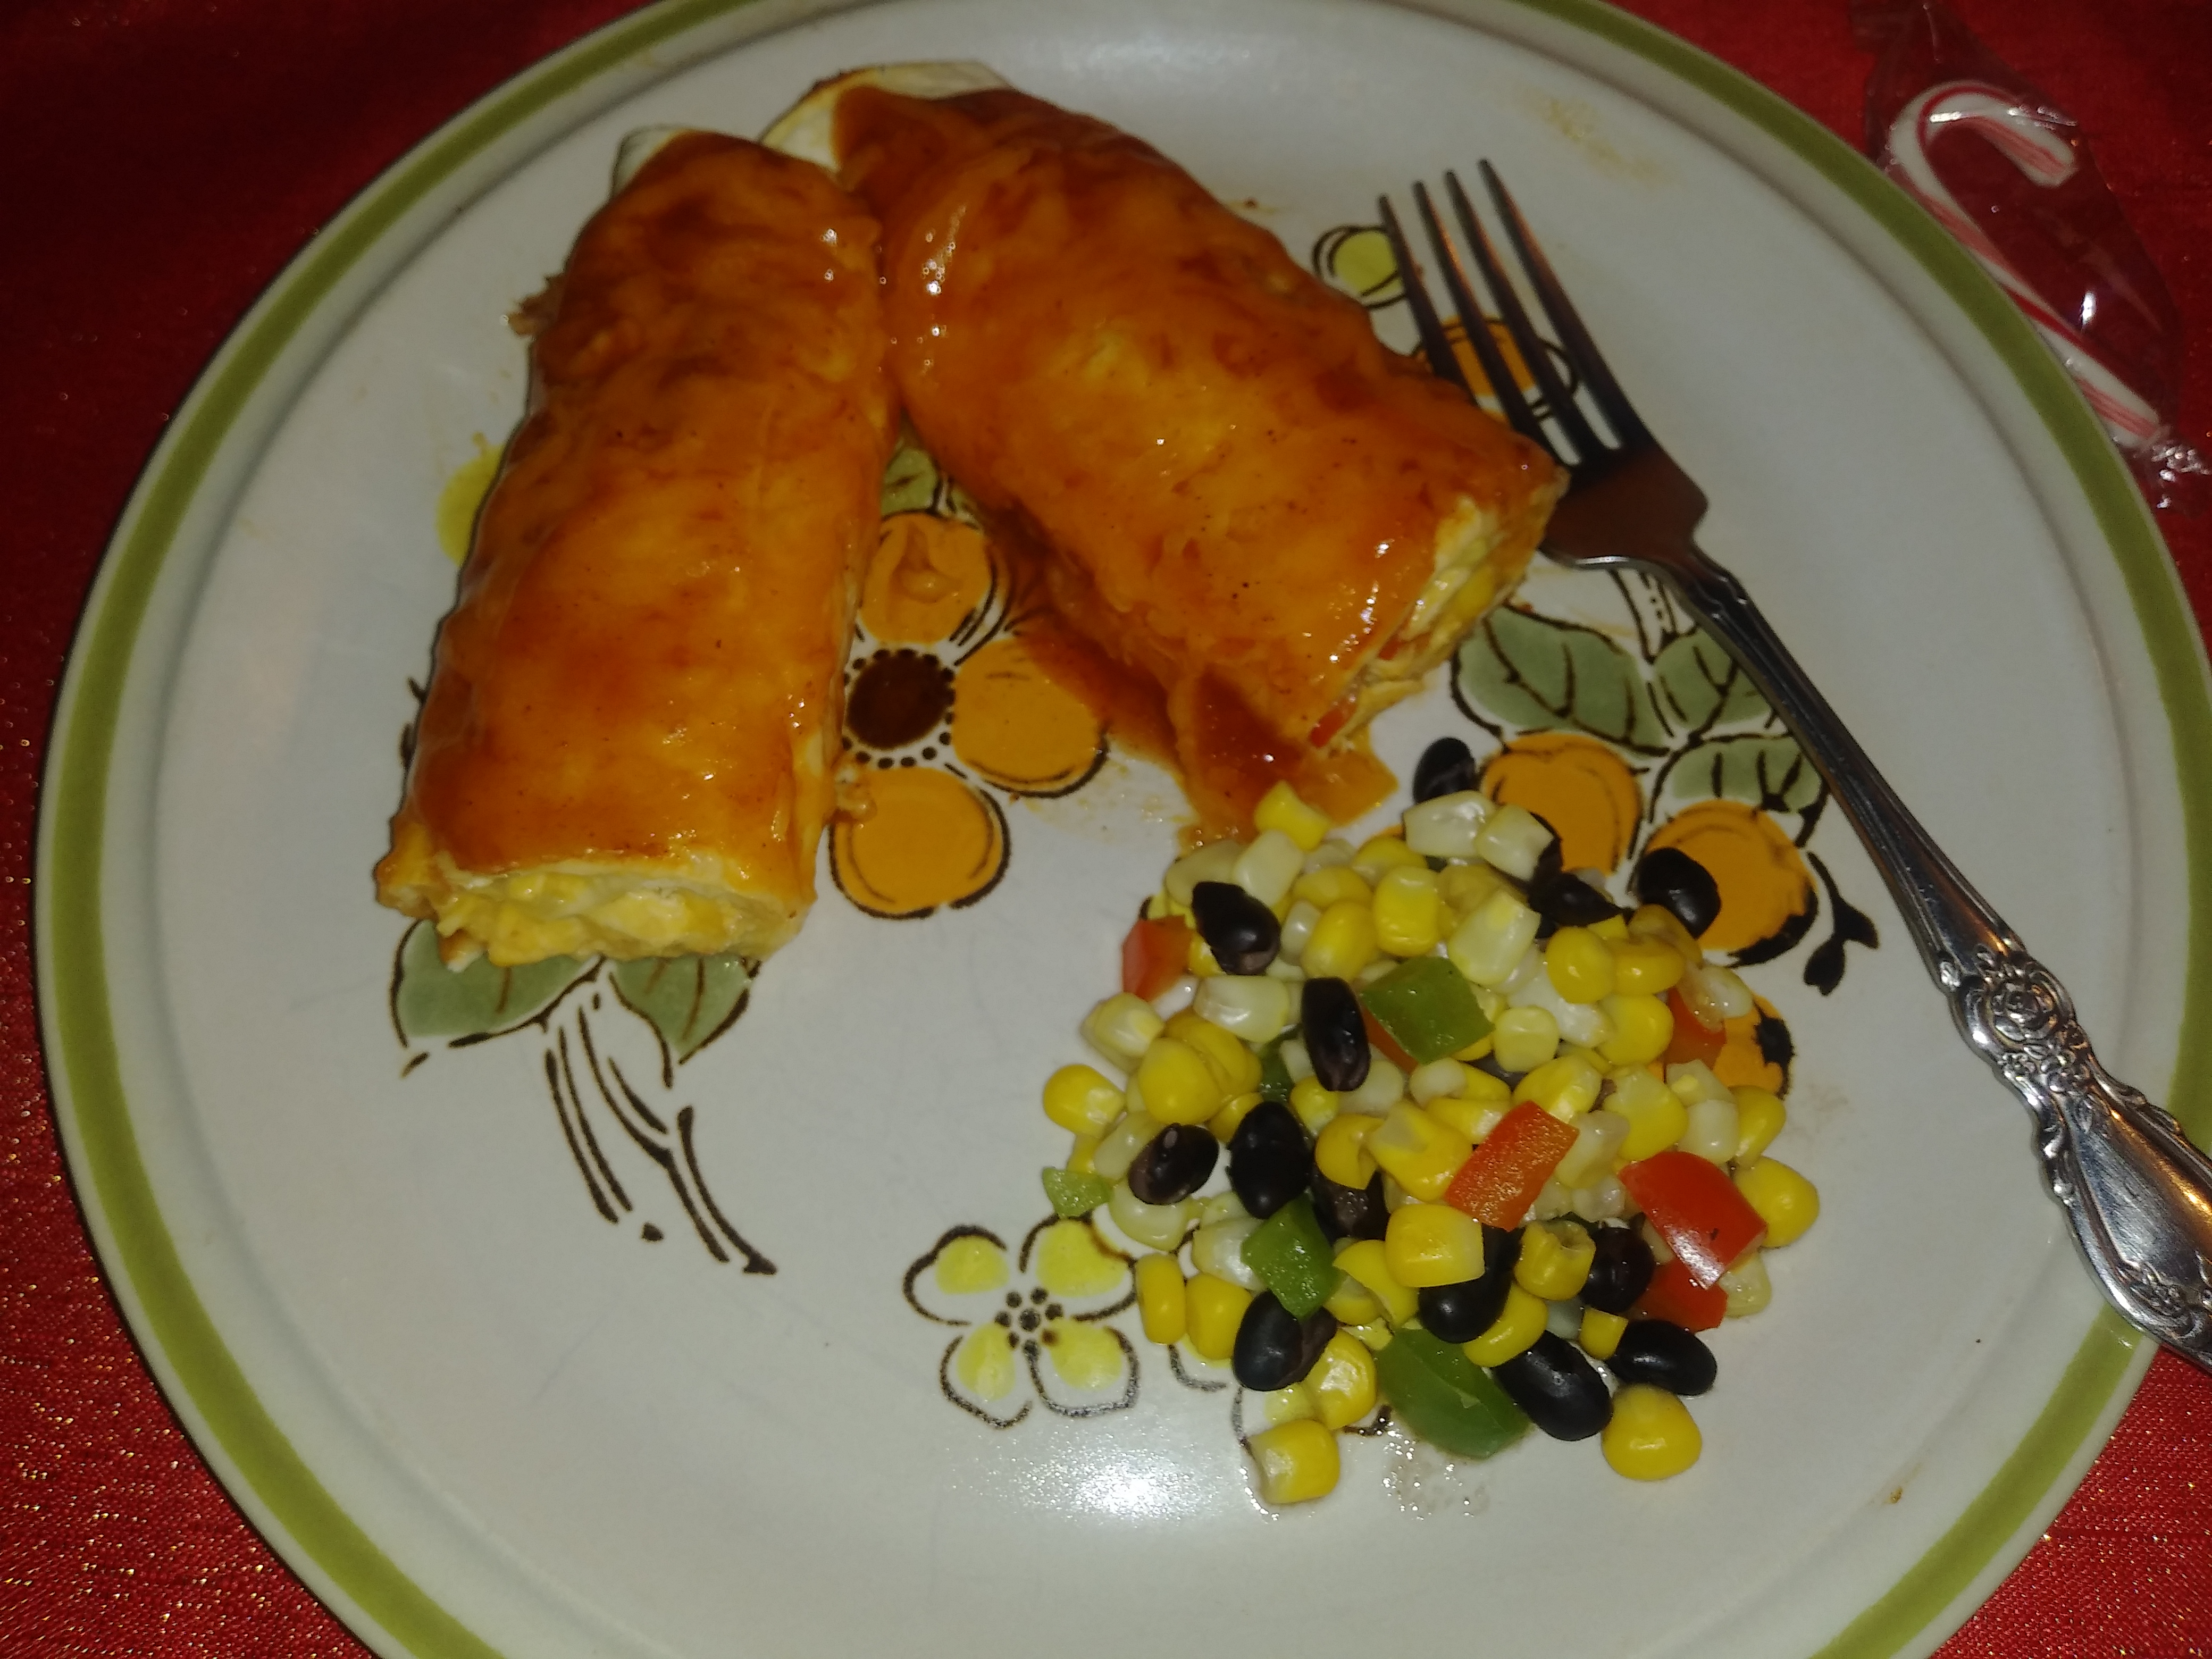 Fiesta Chicken and Black Bean Enchiladas from Mission® Rachella